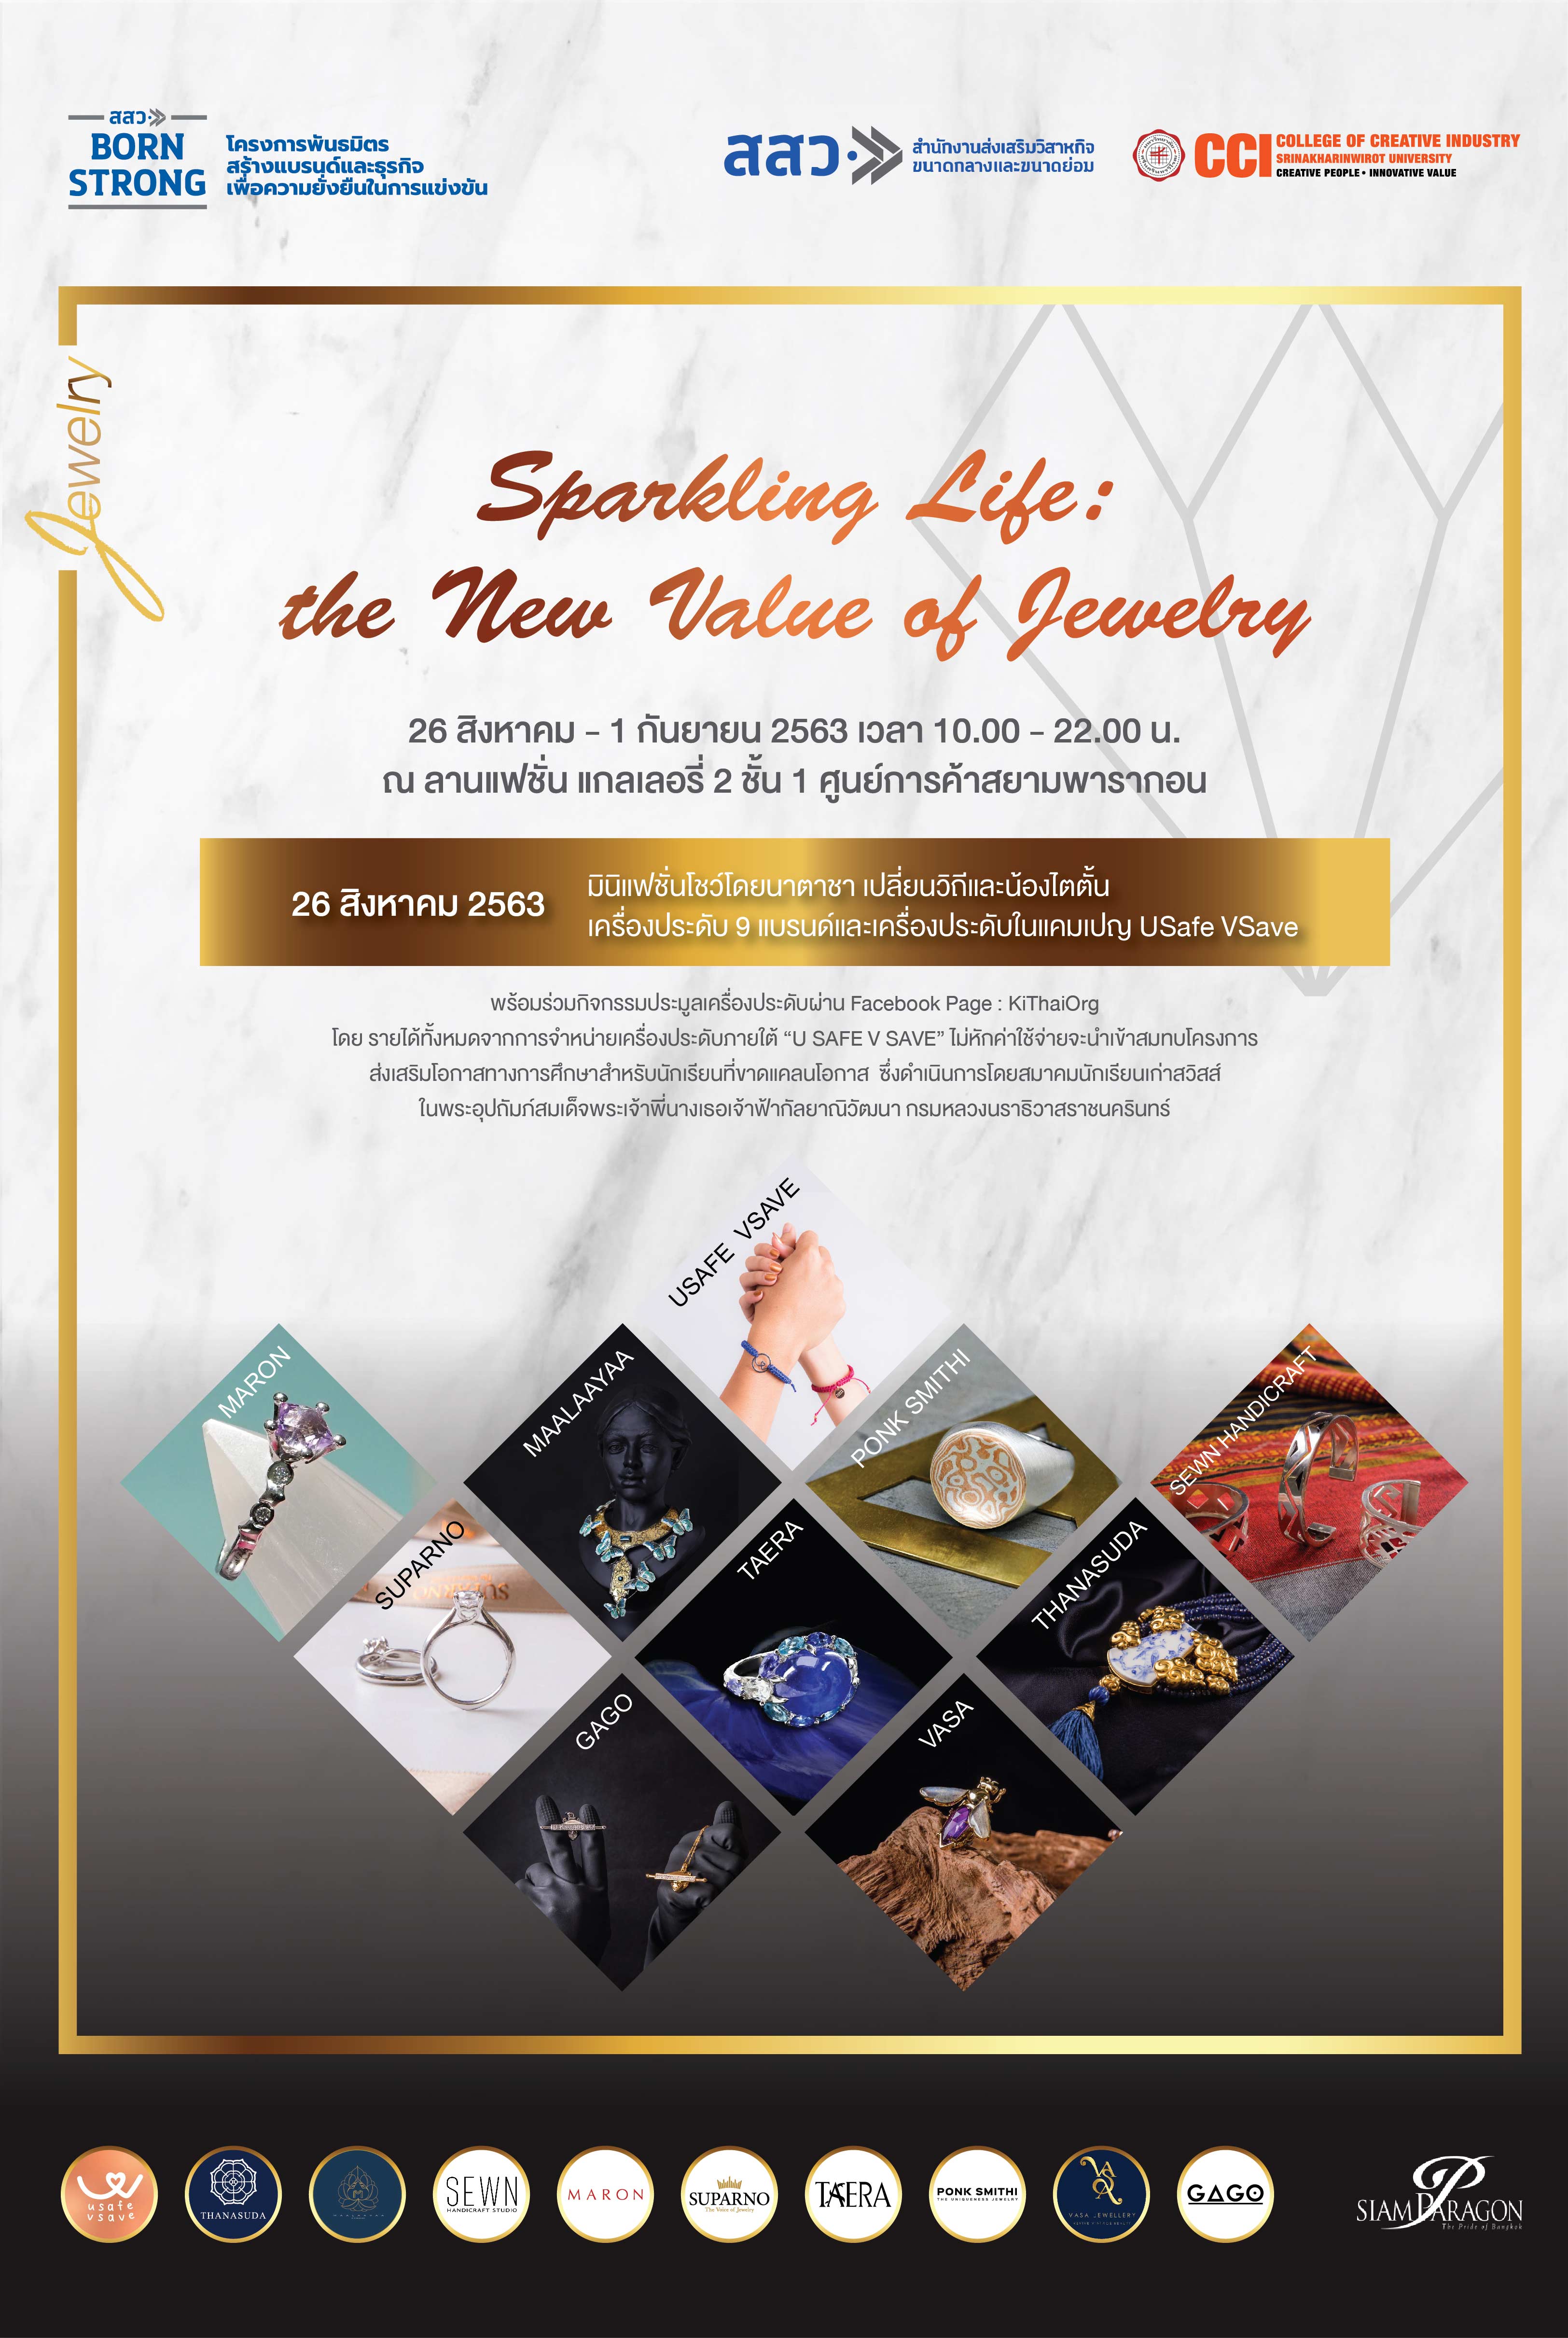 ชวนช้อปจิวเวลรี่ฝีมือคนไทย ในงาน Sparkling Life: the New Value of Jewelry ระหว่างวันที่ 26 สิงหาคม - 1 กันยายนนี้ ณ ชั้น 1 ศูนย์การค้าสยามพารากอน